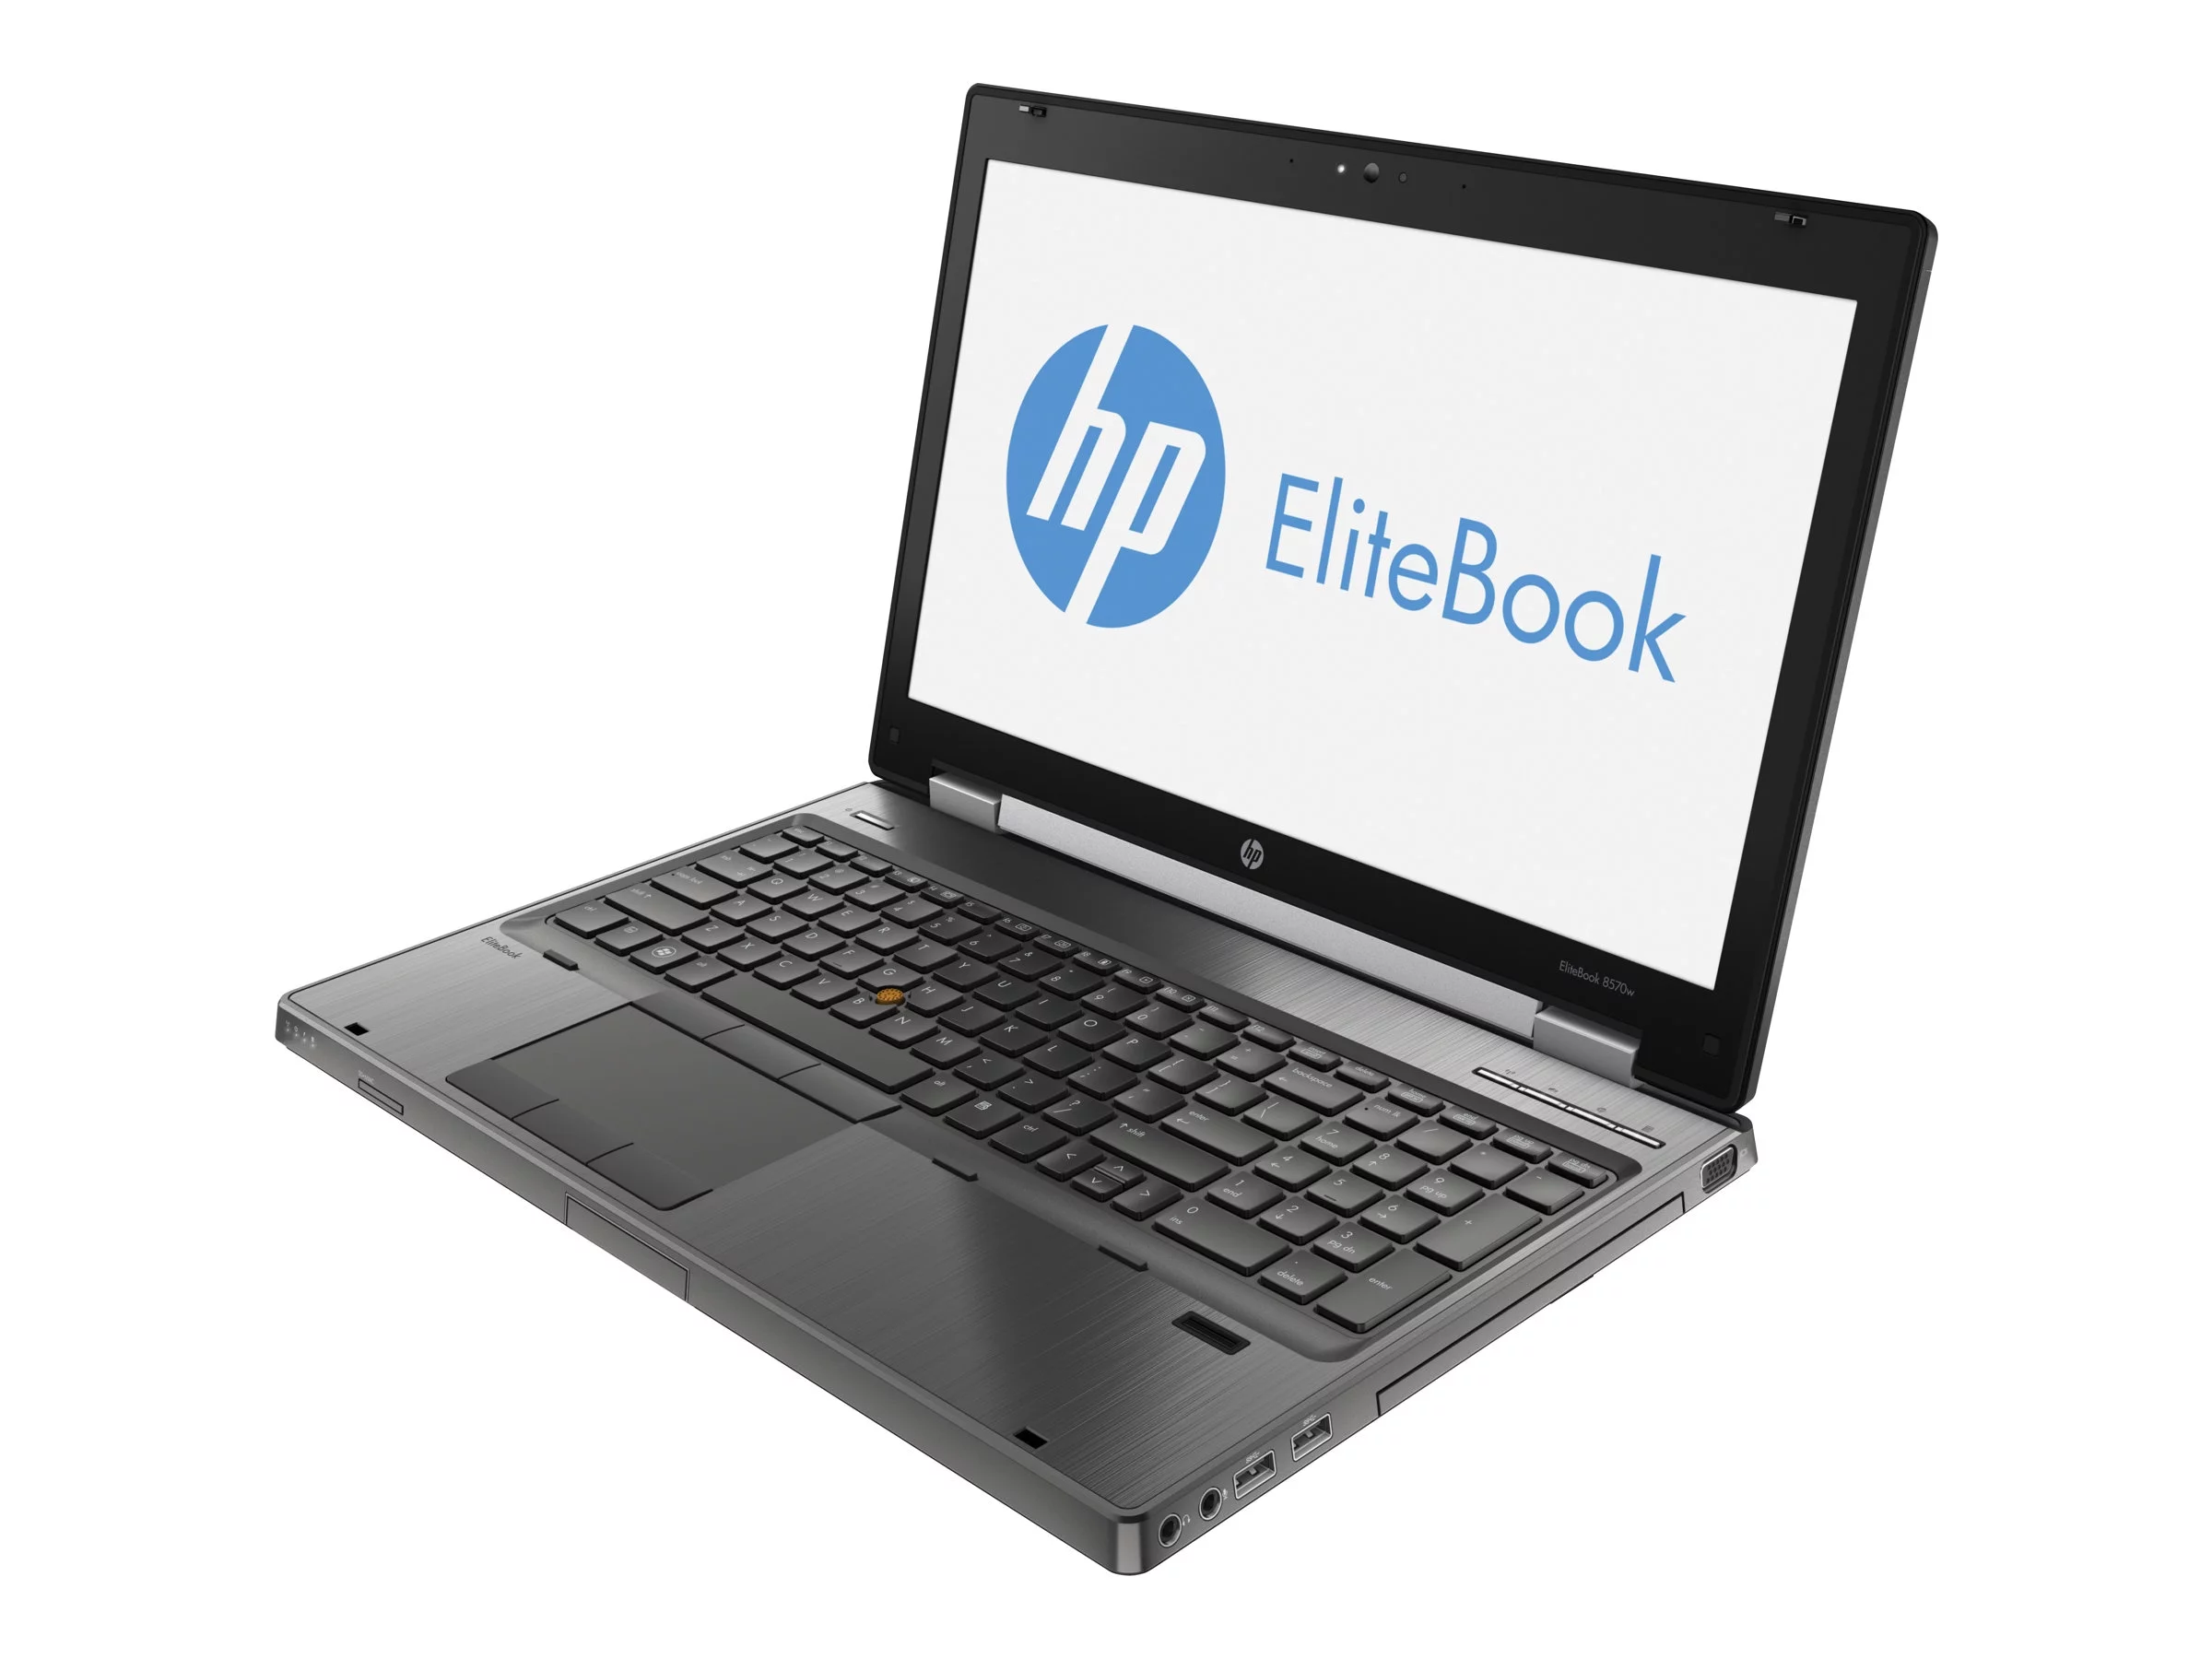 EliteBook 8570w Base Model Mobile Workstation